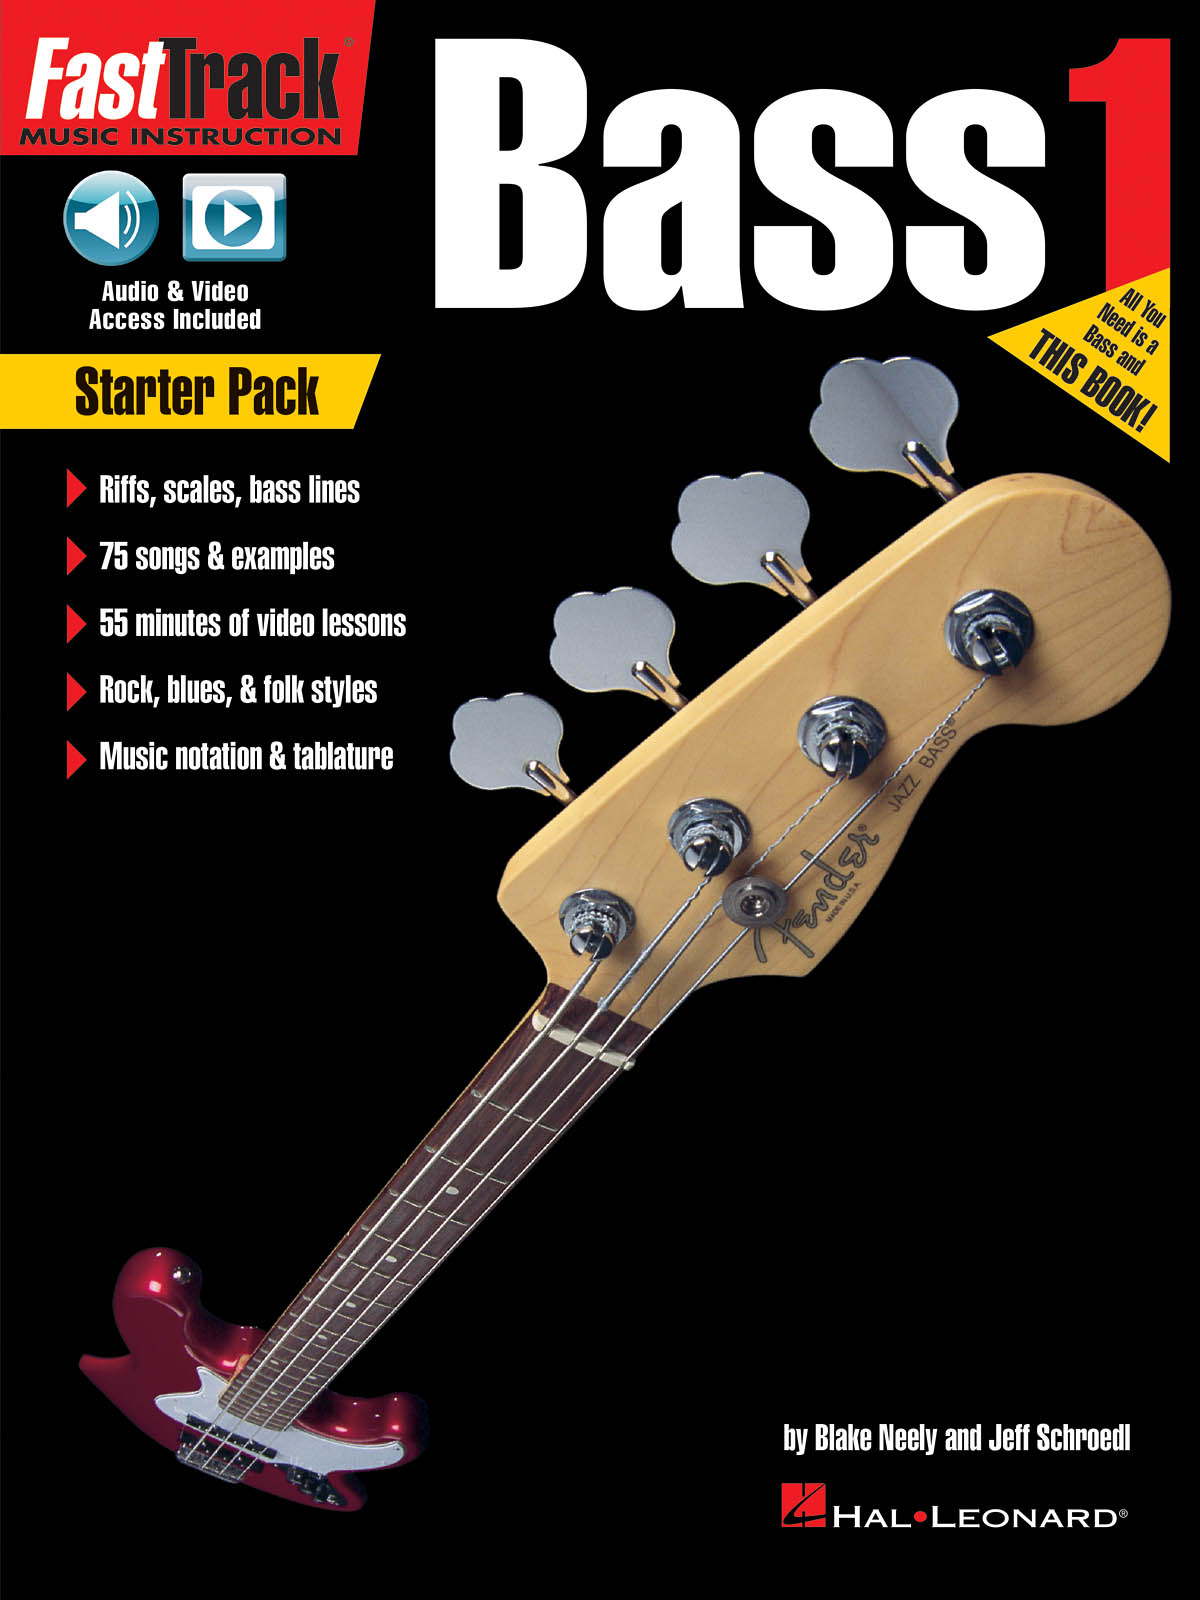 Fasttrack Bass Method - Starter Pack